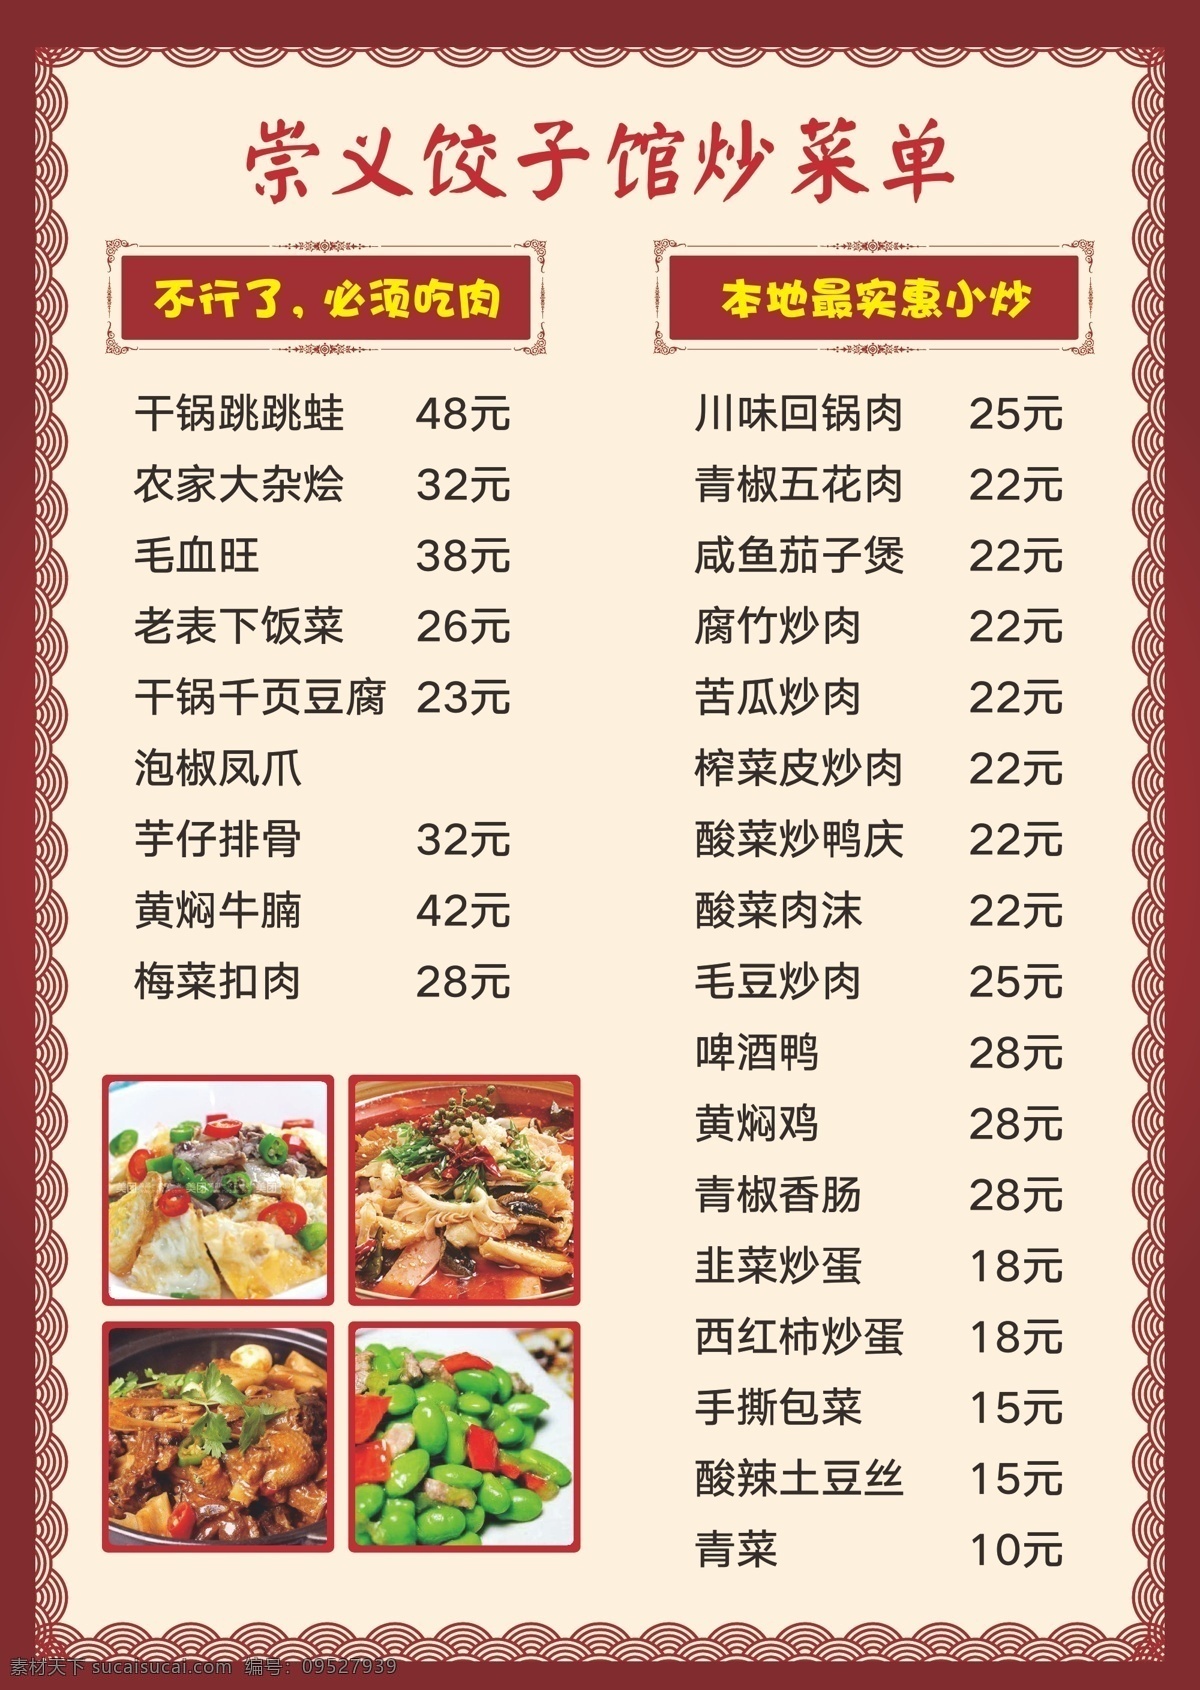 菜单1122 崇义饺子 价目表 菜单 饺子 美食